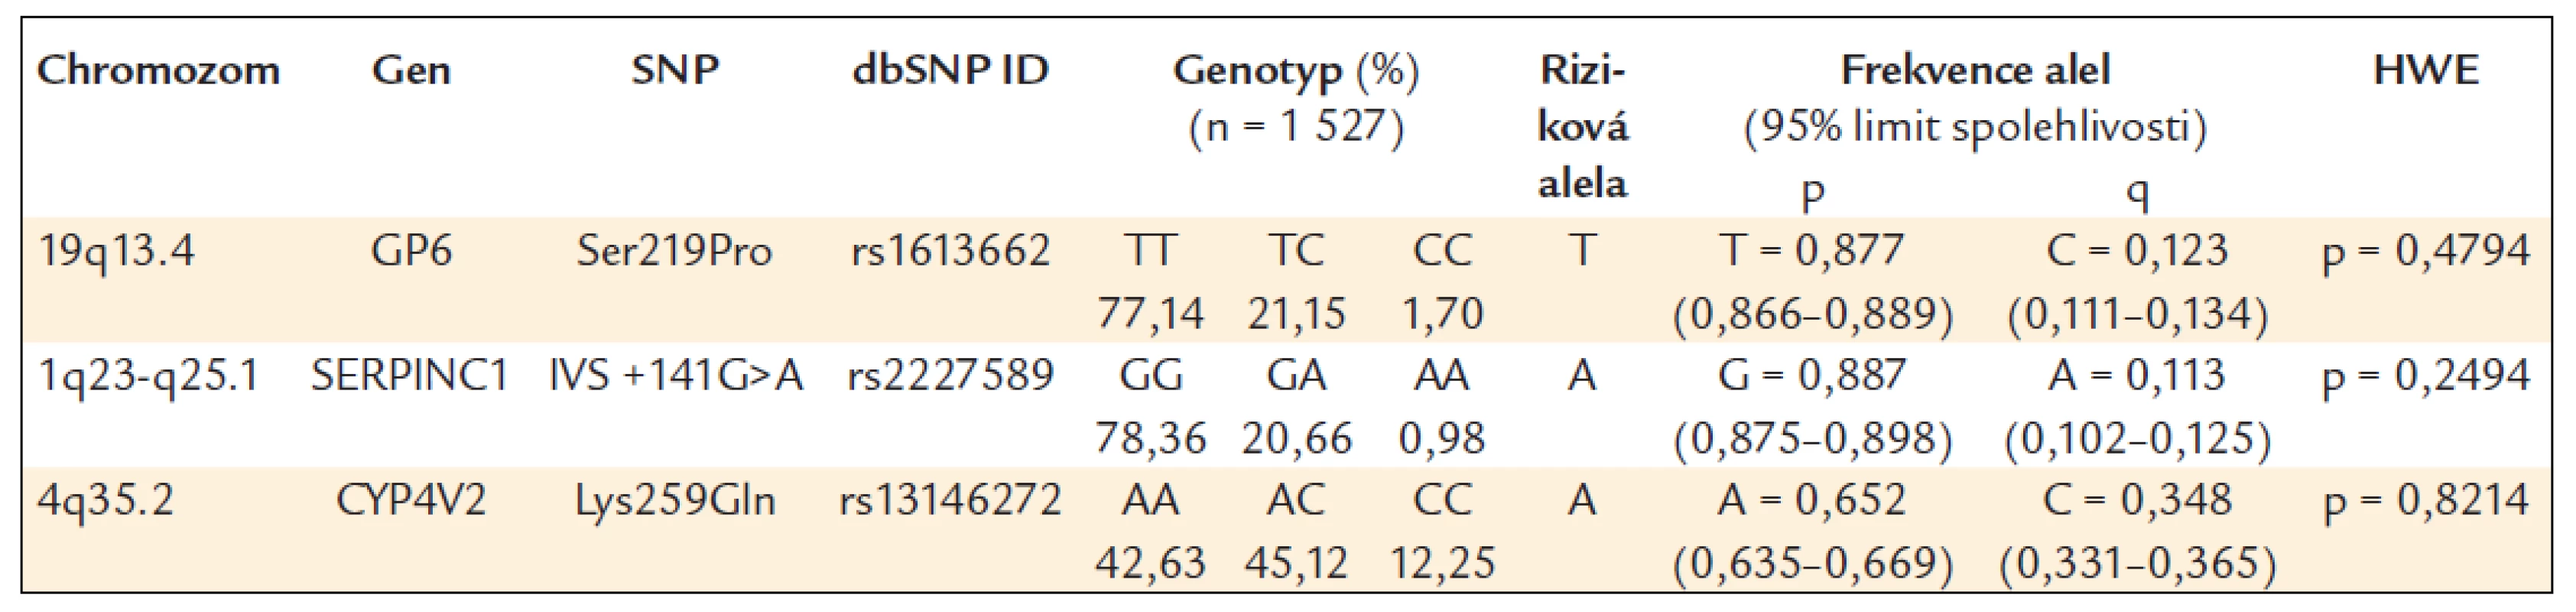 Frekvence genotypů a alel ve sledované české populaci.